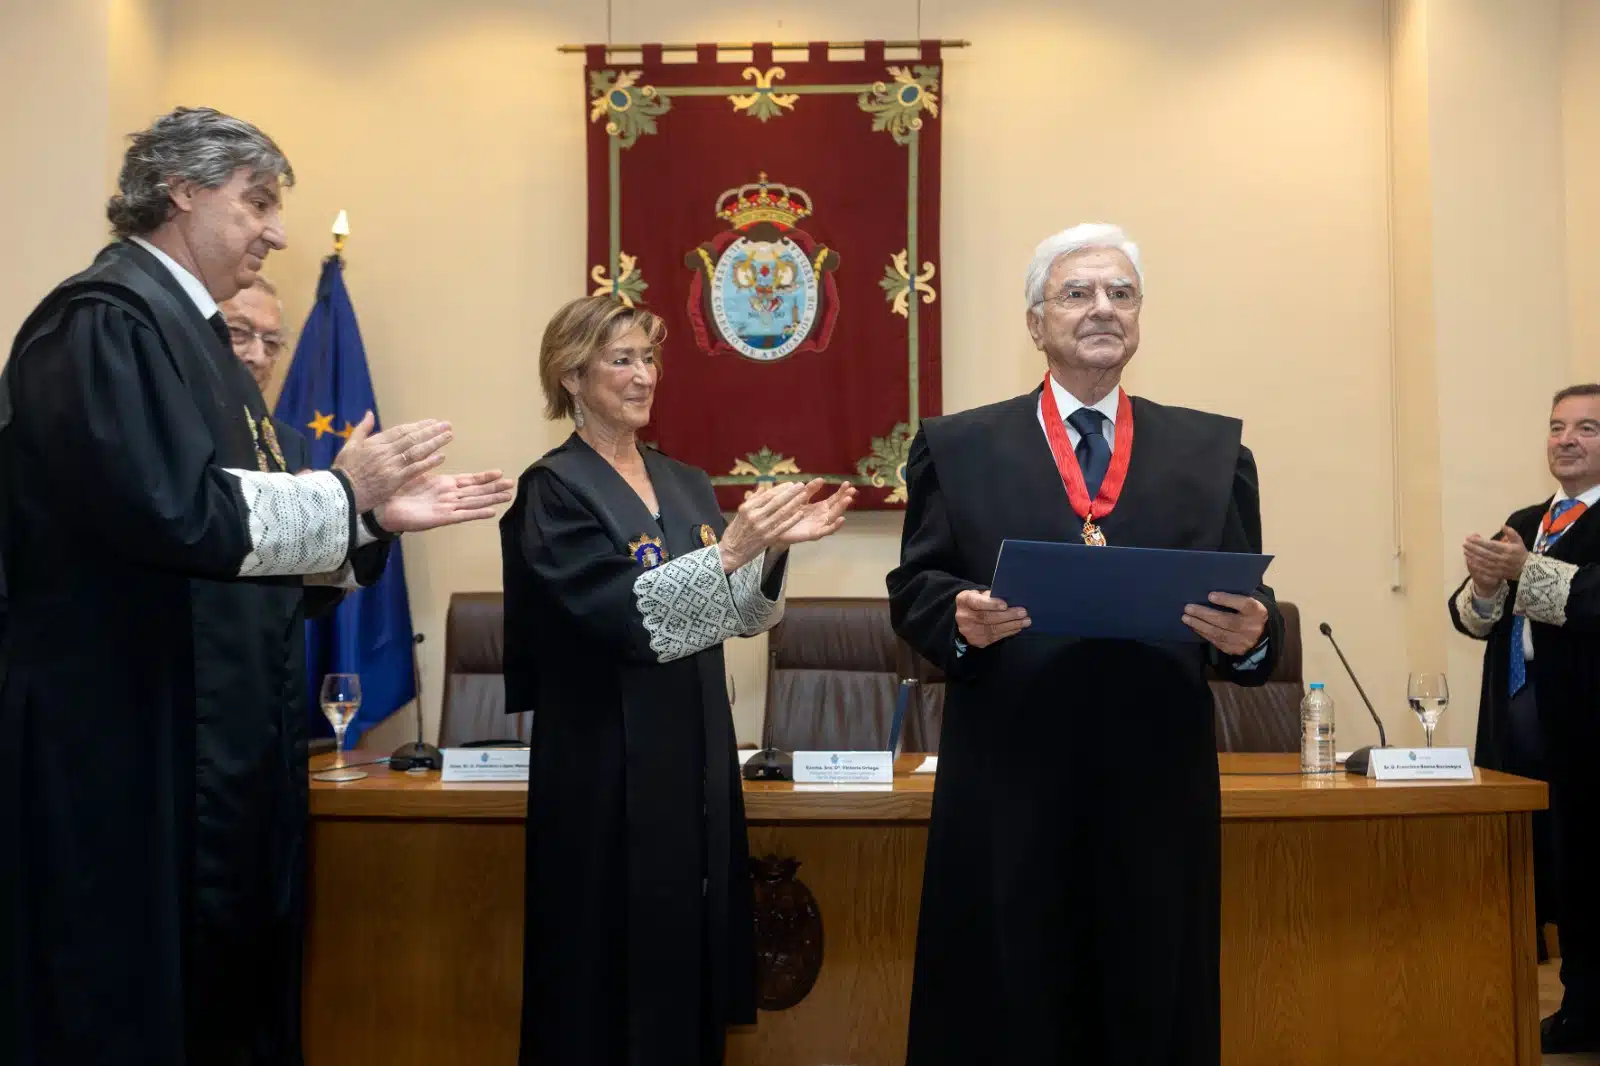 Francisco Baena Bocanegra recibe la Medalla al Mérito en el Servicio de la Abogacía, en Sevilla